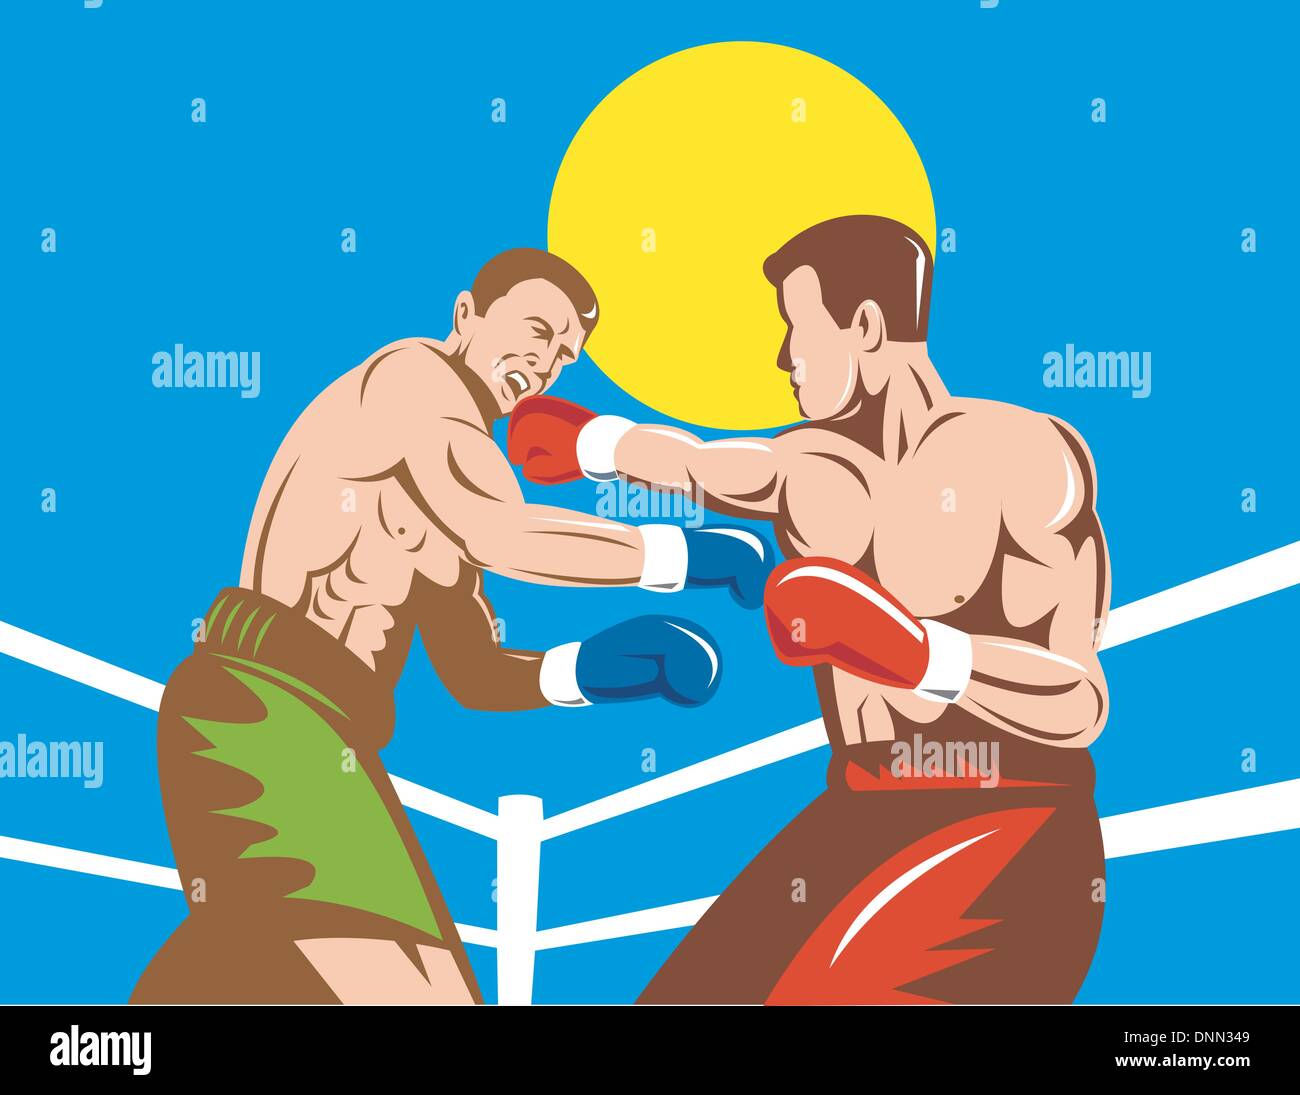 Abbildung eines Boxers verbinden einen KO-Schlag getan im retro-Stil Stock Vektor